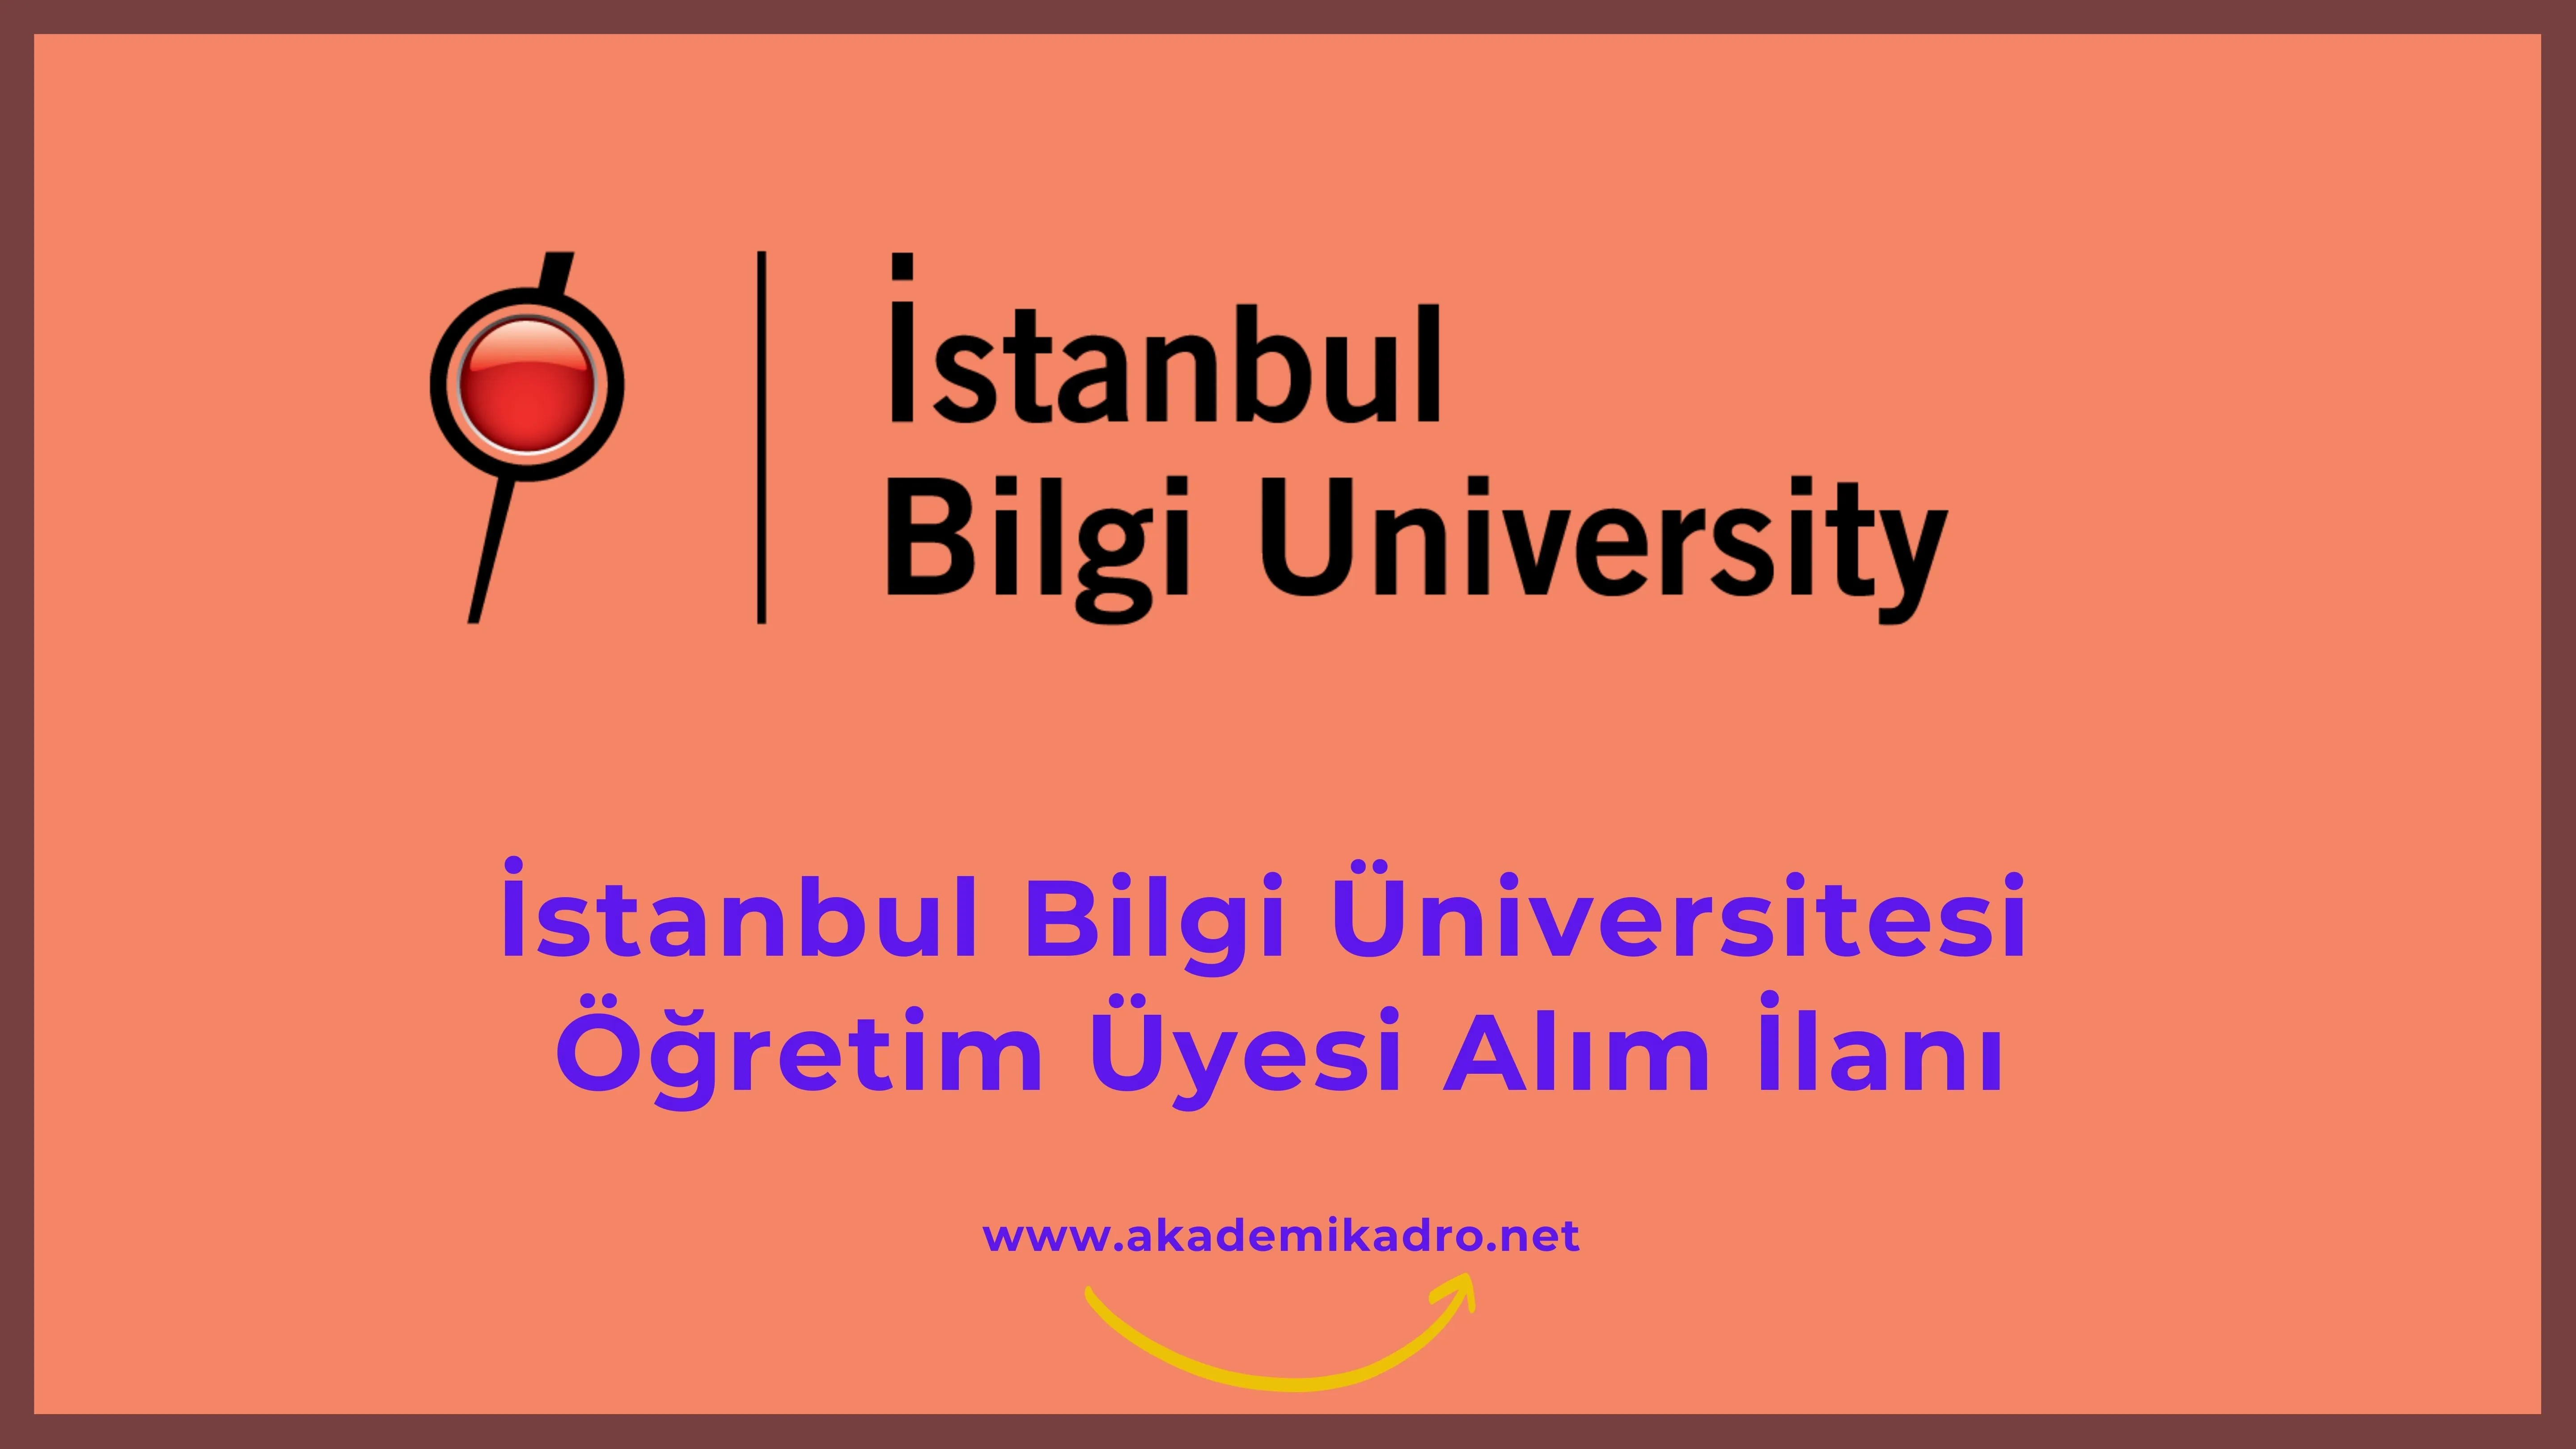 İstanbul Bilgi Üniversitesi birçok alandan 20 Öğretim üyesi alacak. Son başvuru tarihi 26 Ocak 2023.